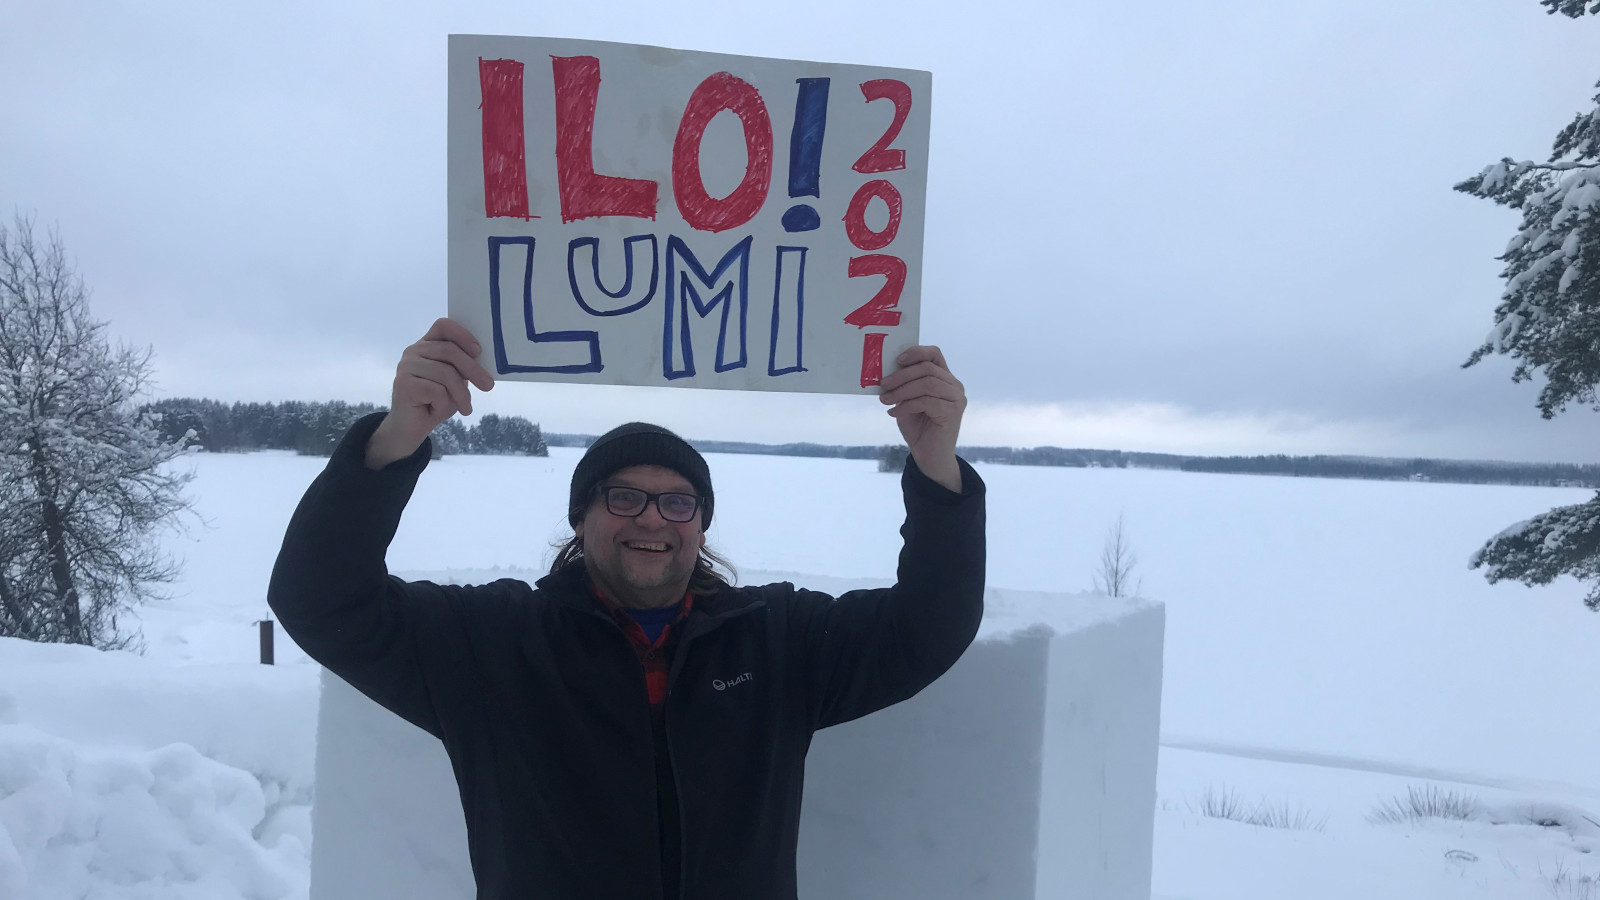 Kuvassa on Reko Mäki pitelemässä kädet ylhäällä kylttiä, jossa lukee Ilo!lumi 2021 ja taustalla on luminen järven selkä.